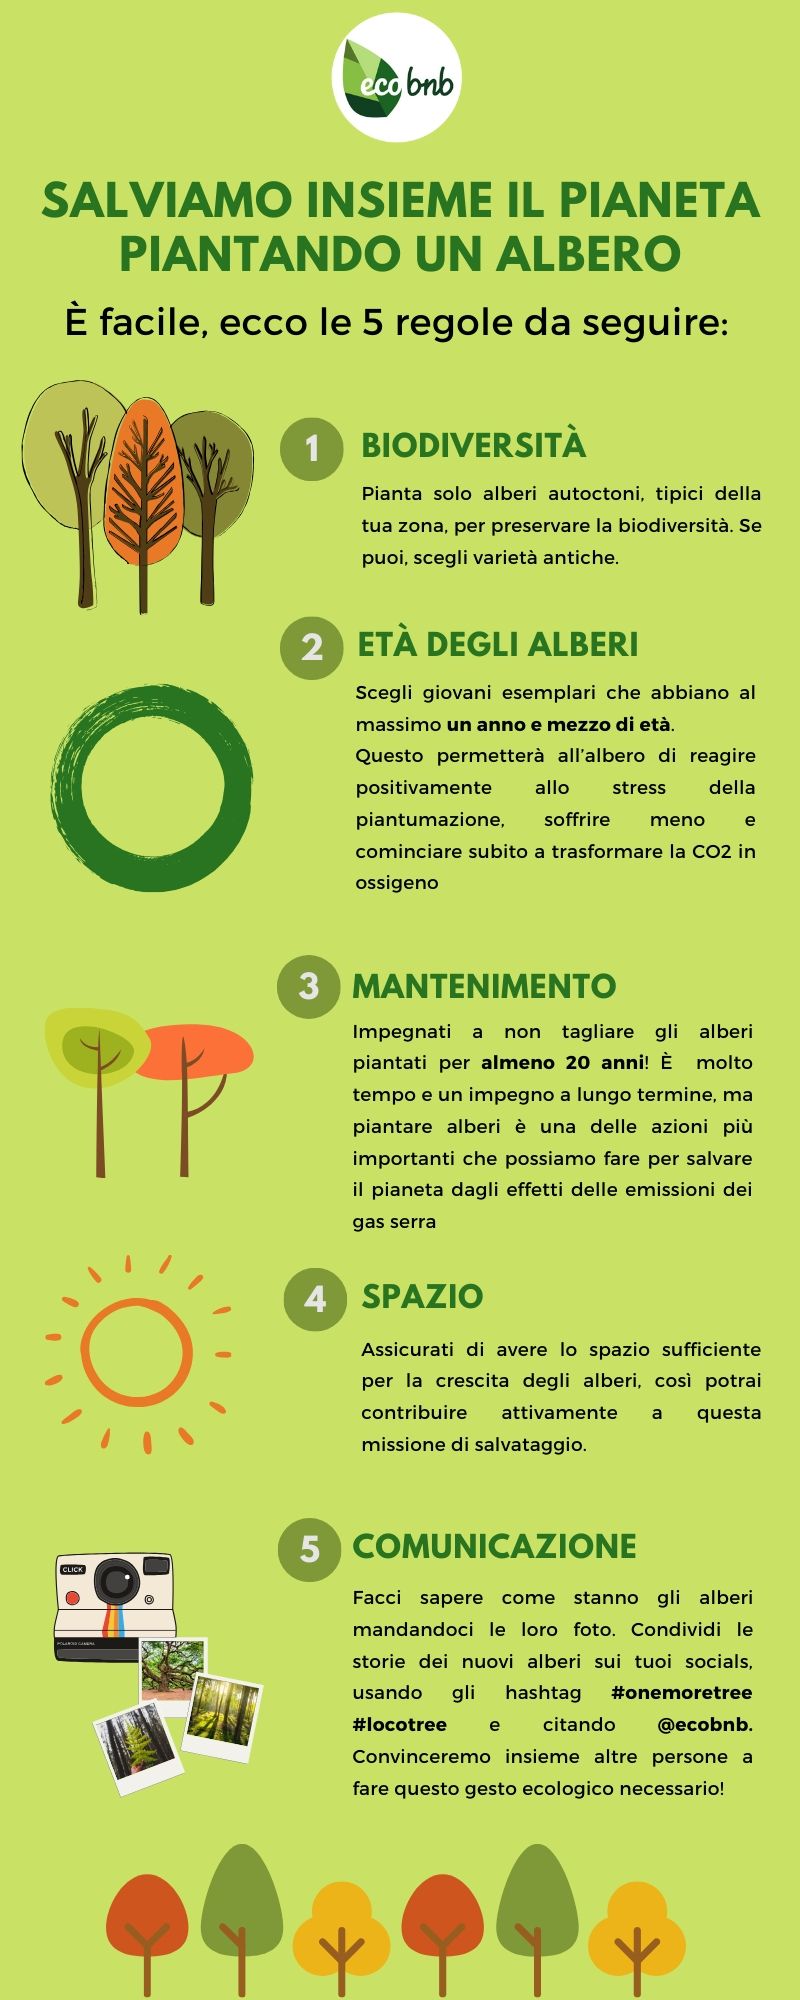 5 regole per piantare alberi con ecobnb